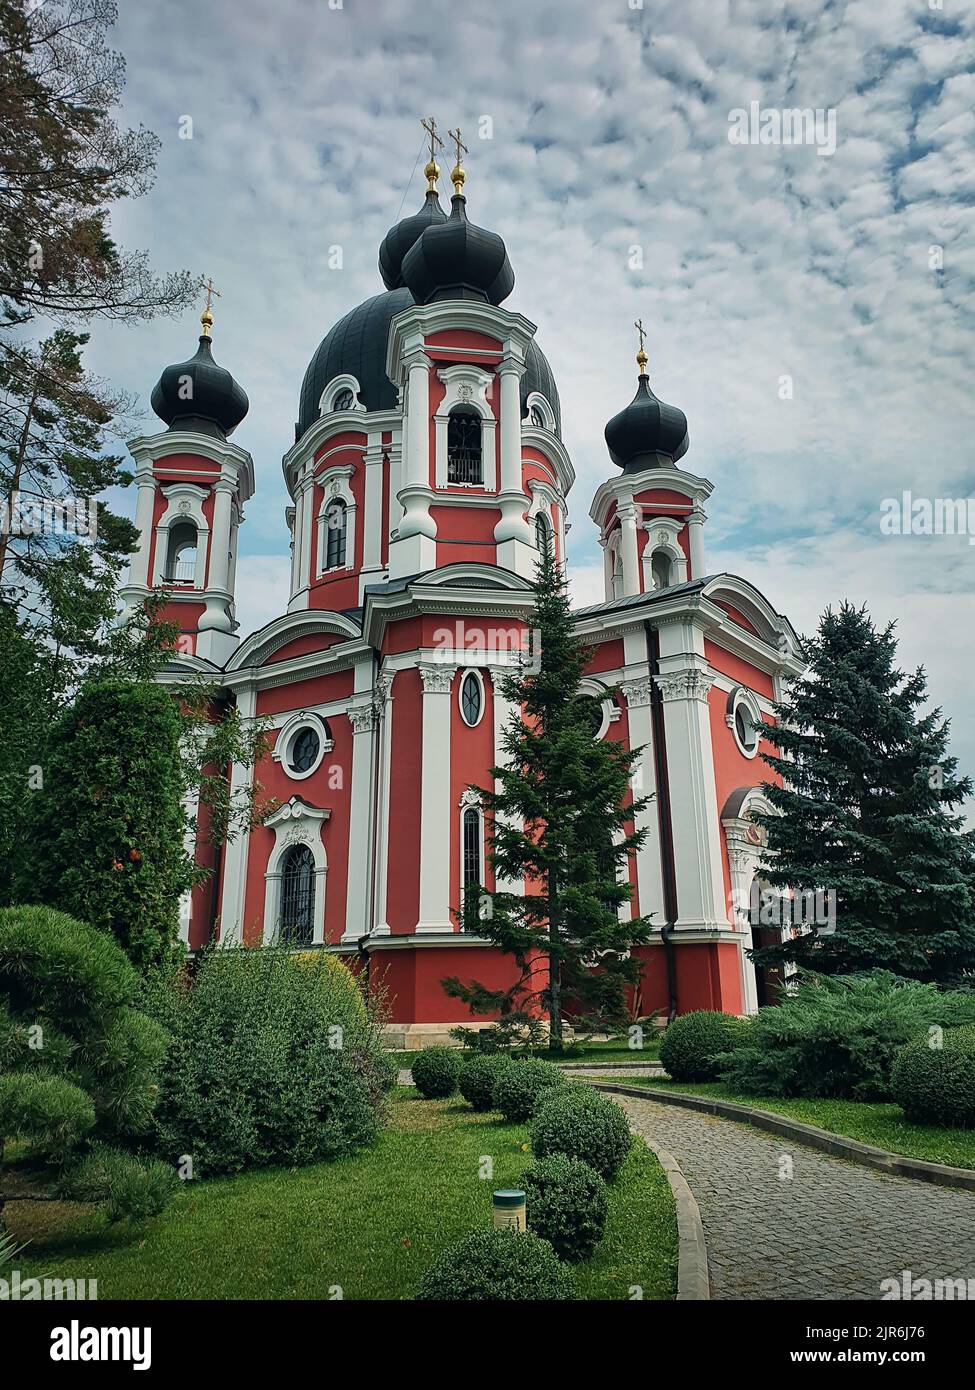 Curchi Kloster Blick von außen auf das berühmte Wahrzeichen in Orhei, Moldawien. Kirche im christlich-orthodoxen Stil, traditionell für die Kultur Osteuropas. Wunderschön Stockfoto